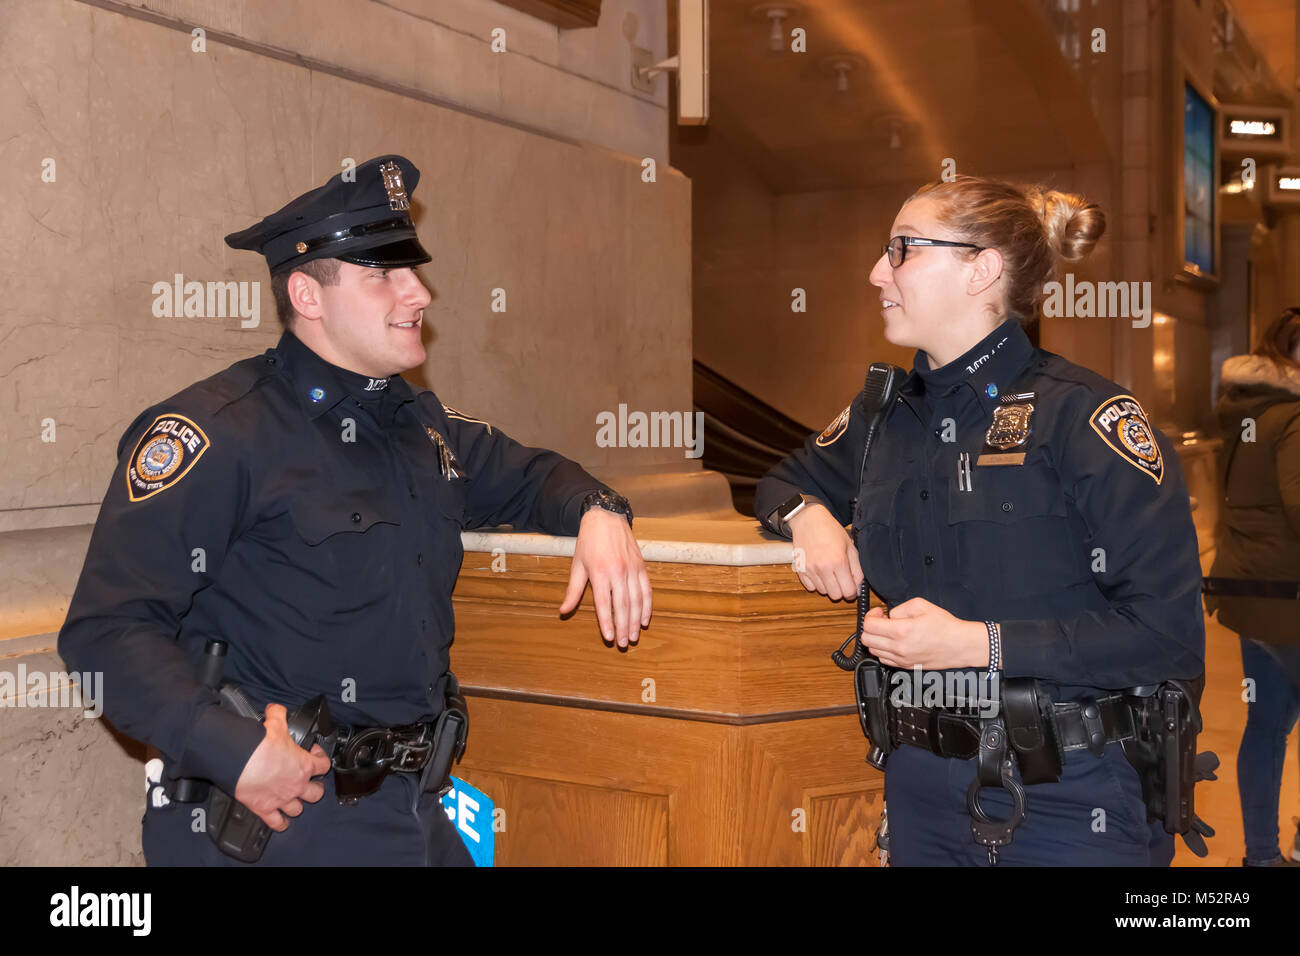 Männliche und weibliche Polizisten in ein Gespräch. Stockfoto